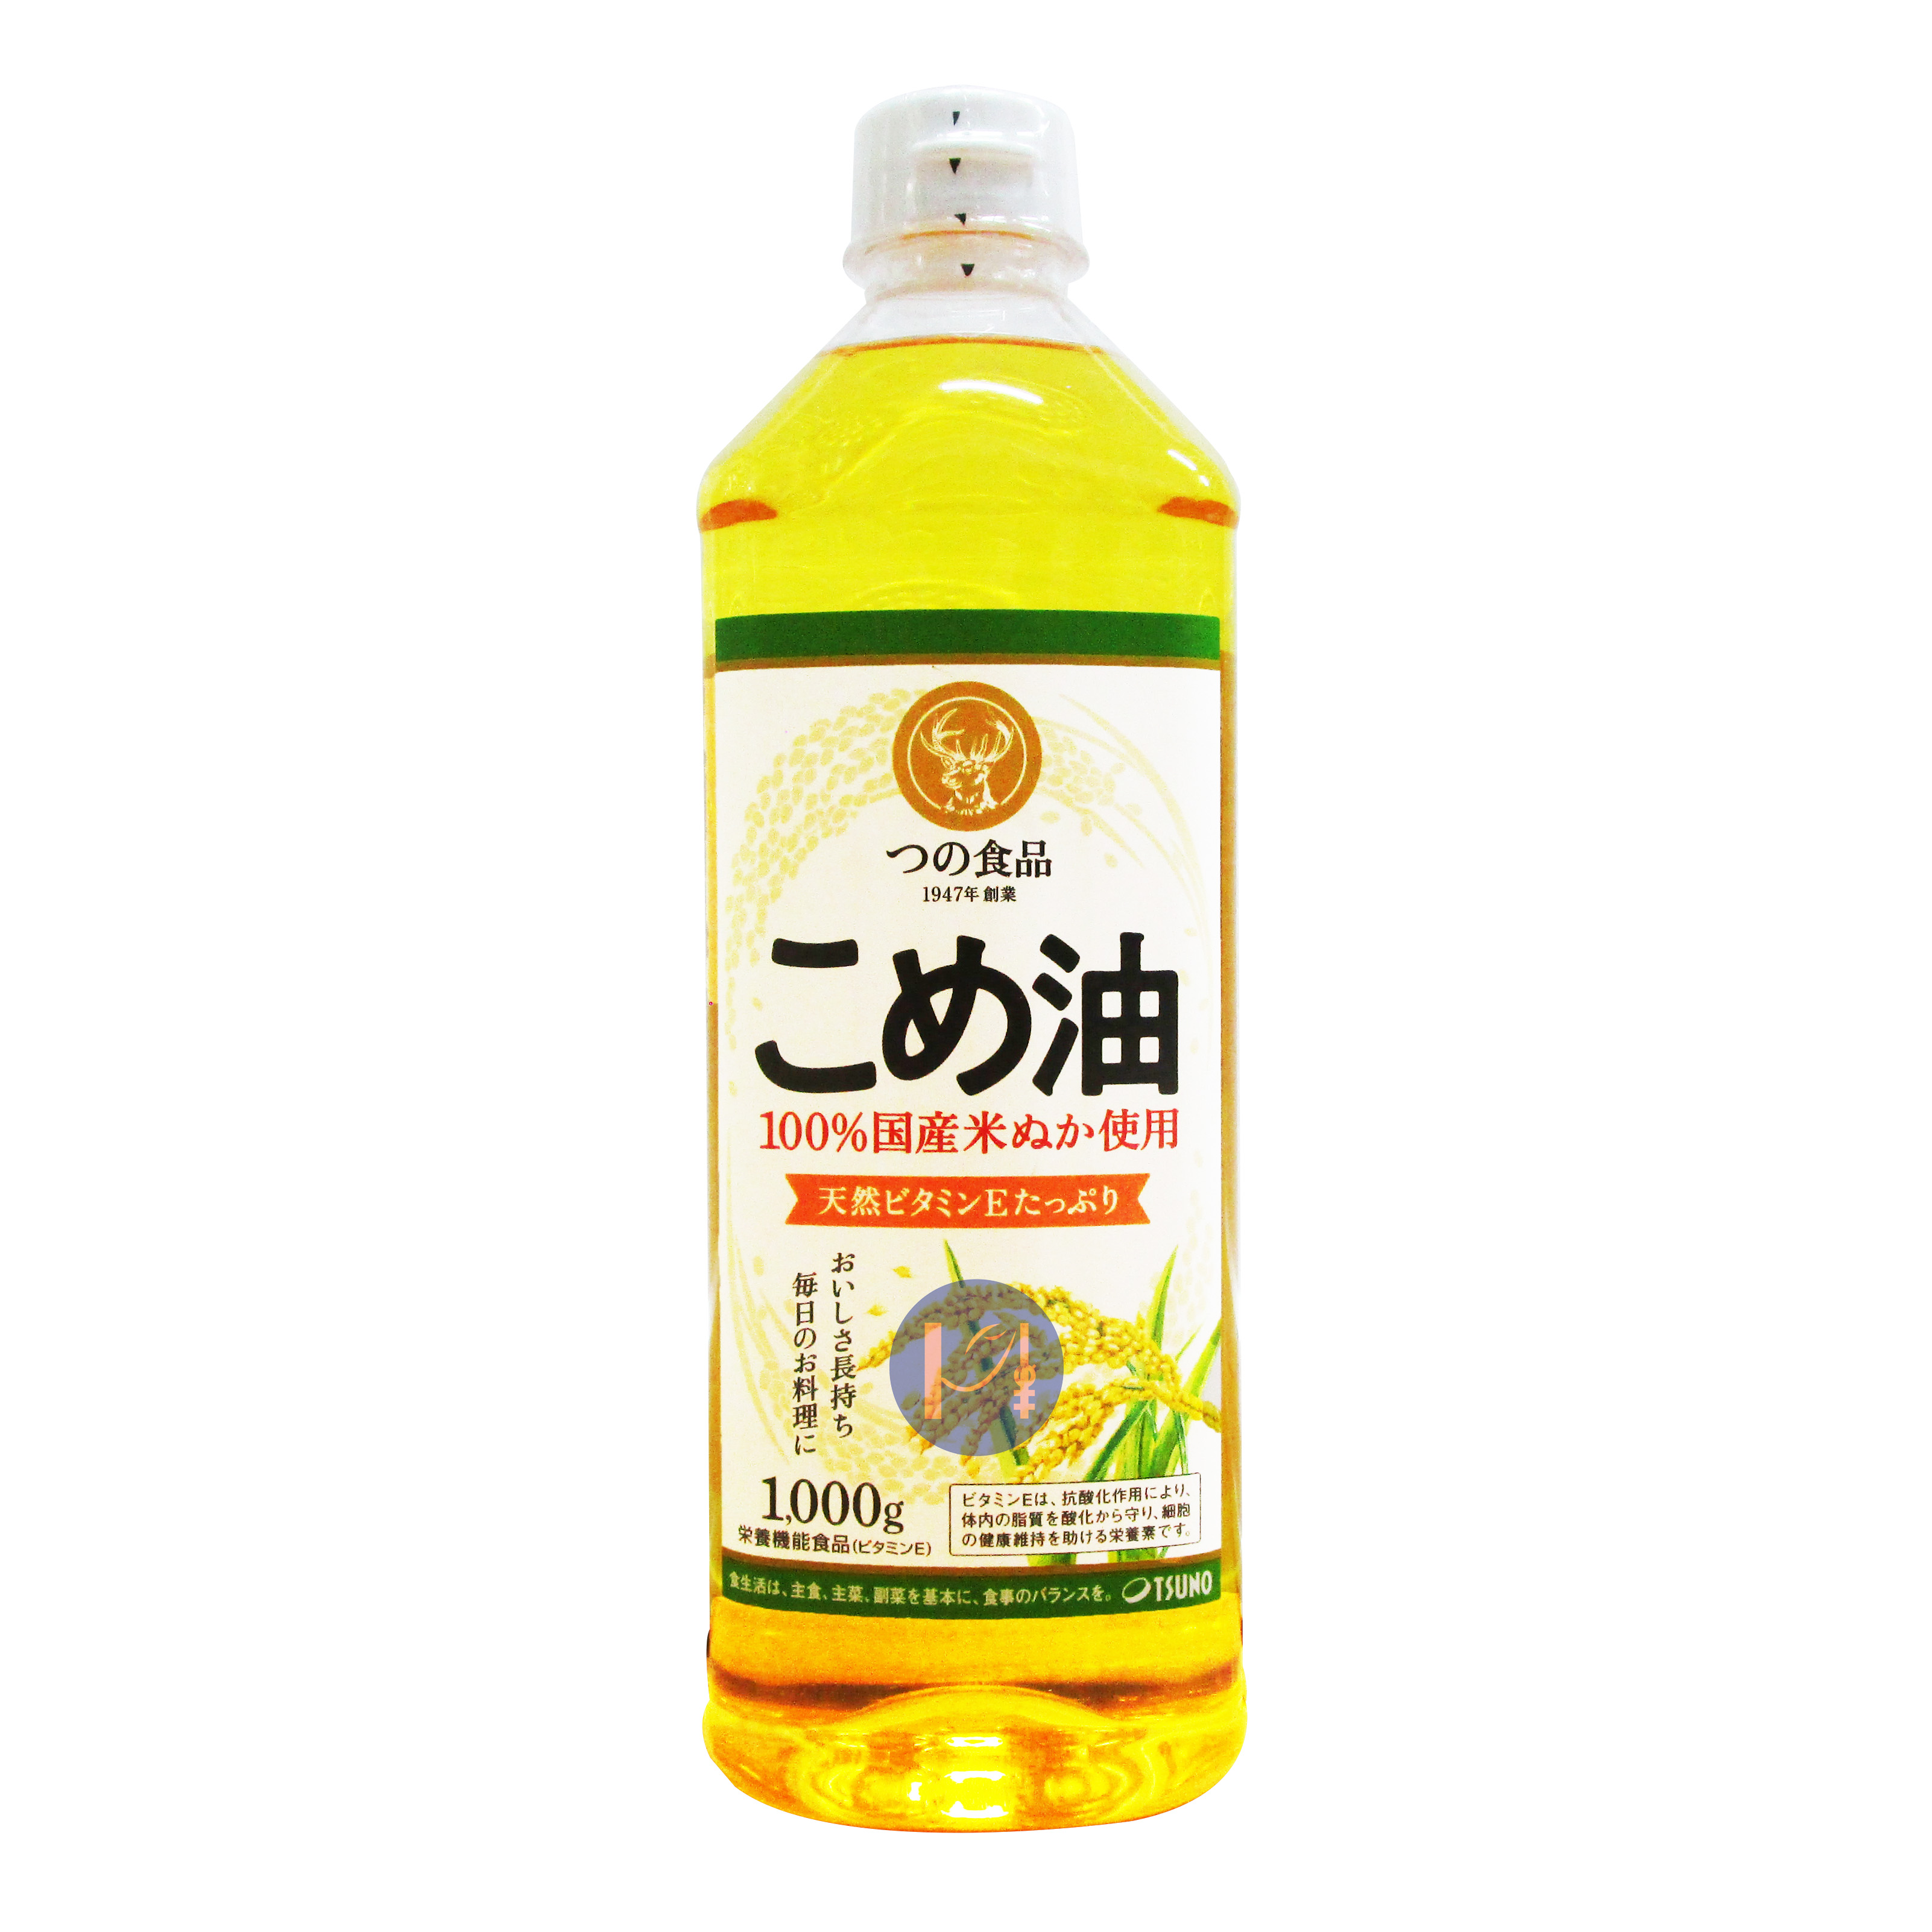 Bao Bì 2023 Dầu Gạo Tsuno Siêu Vitamin E Nhập Khẩu Nhật Bản Chai 1000g